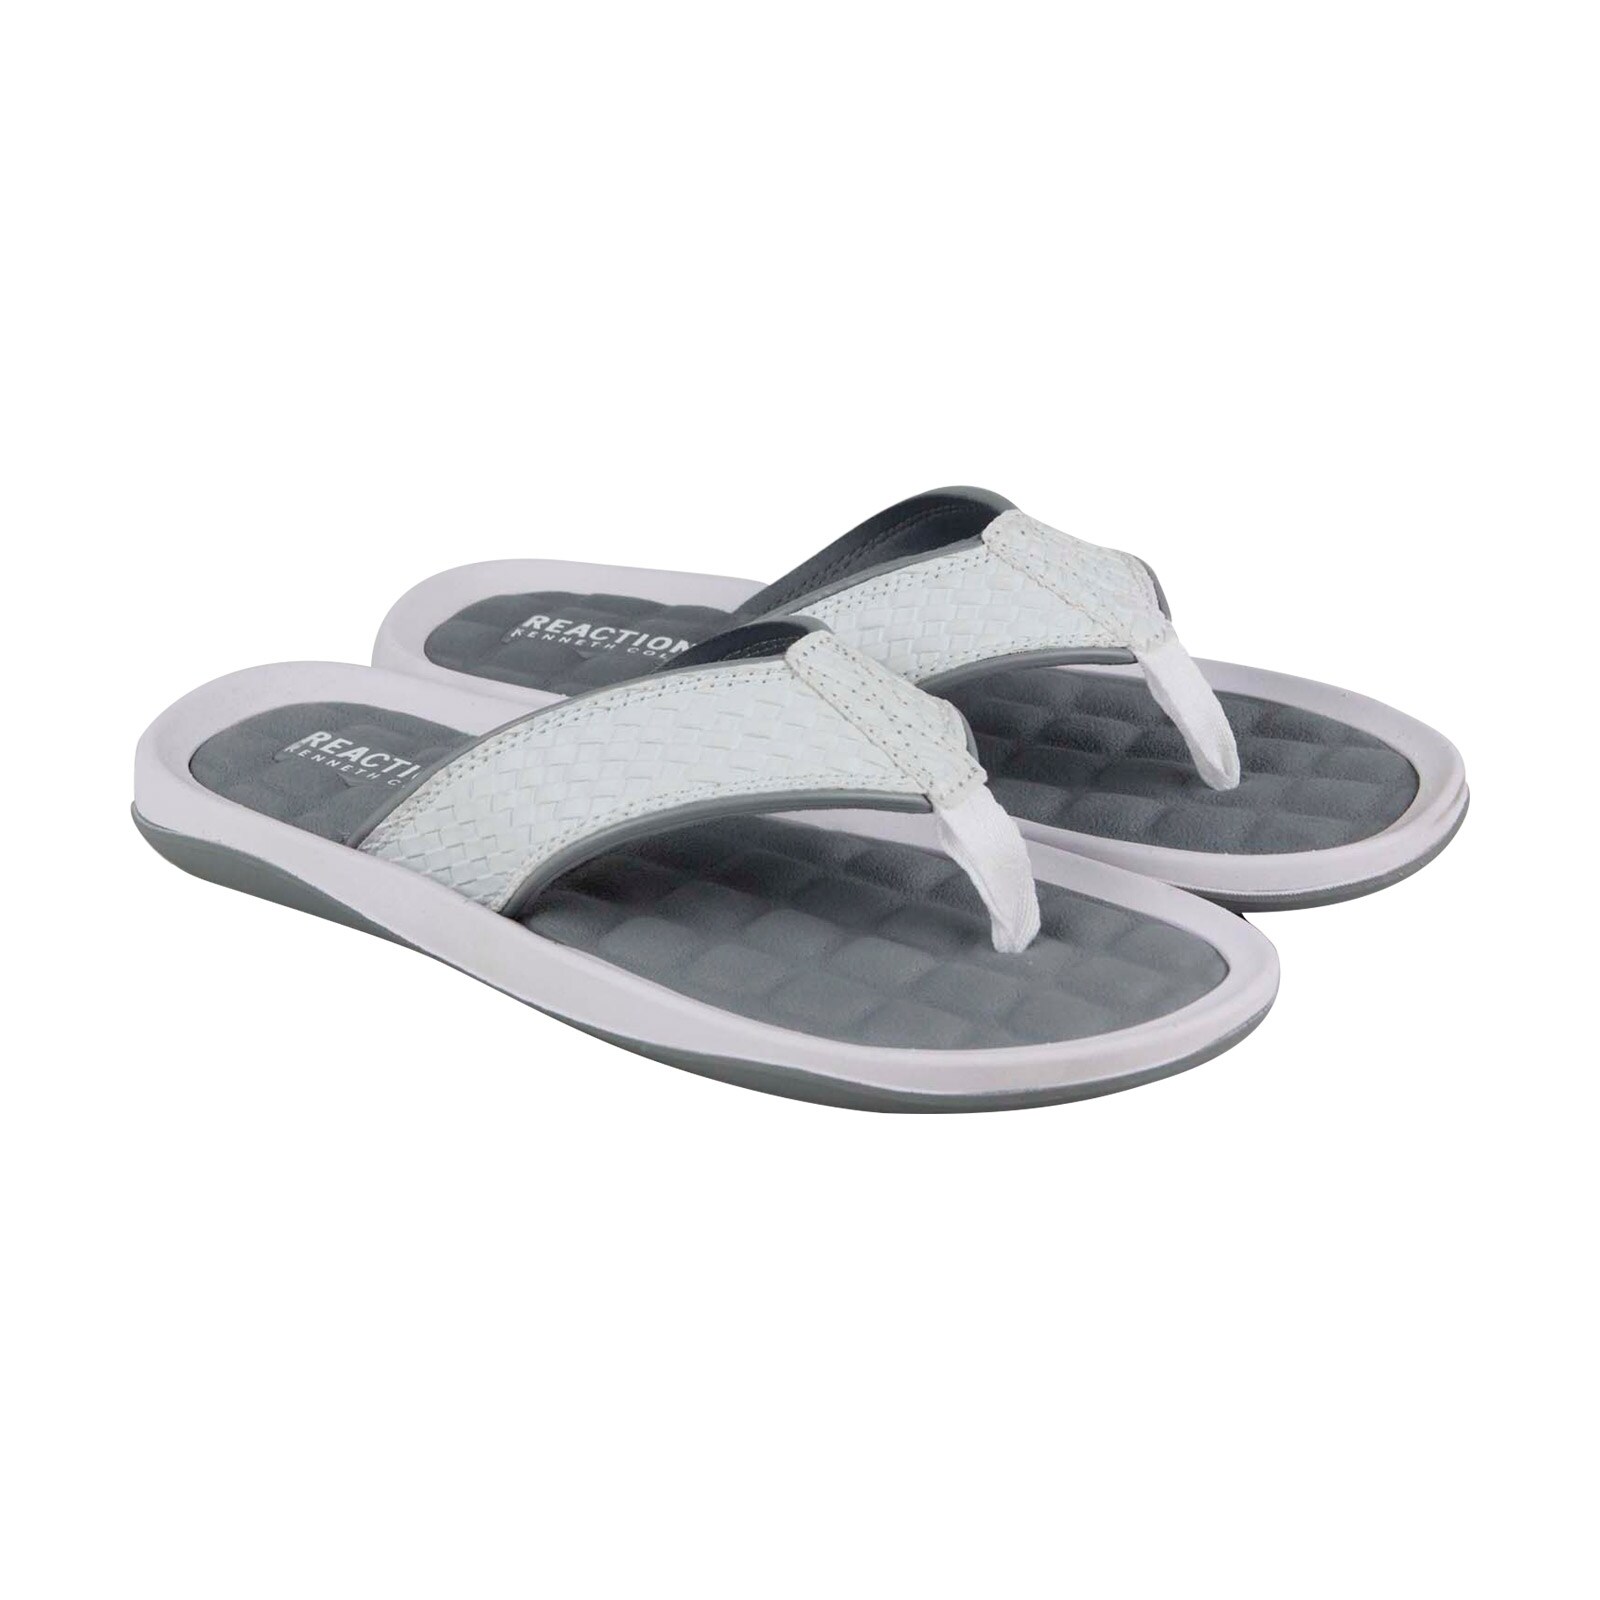 mens white flip flops sandals